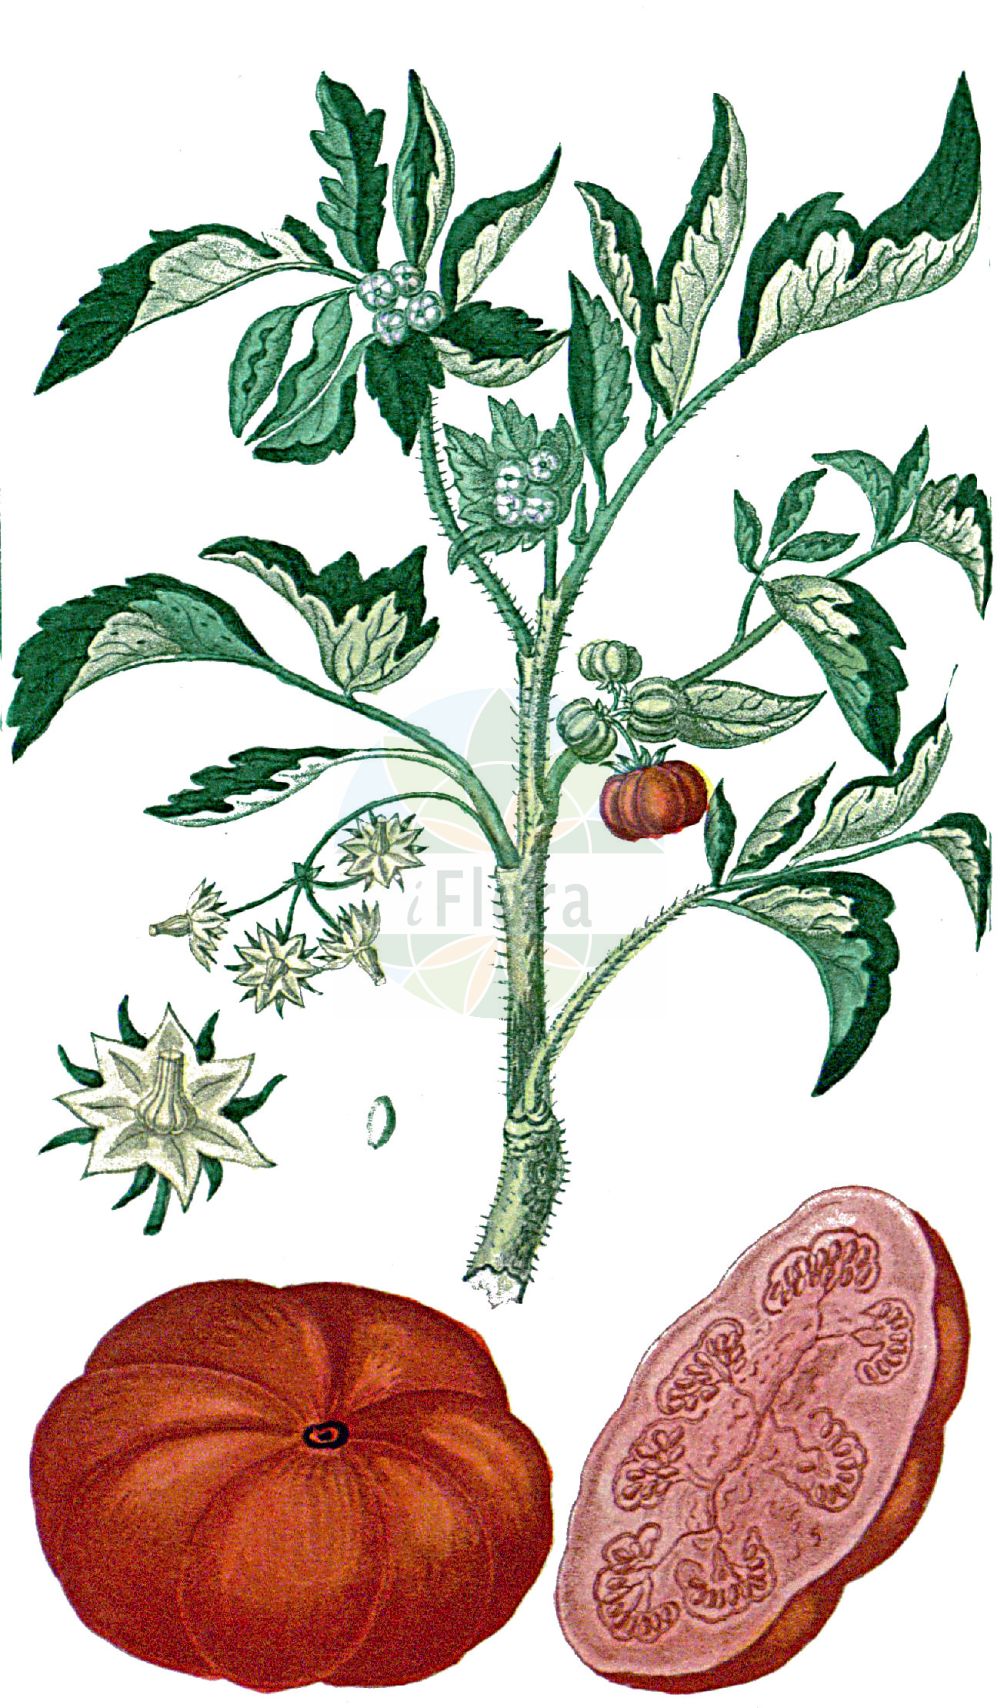 Historische Abbildung von Lycopersicon esculentum (Garten-Tomate - Tomato). Das Bild zeigt Blatt, Bluete, Frucht und Same. ---- Historical Drawing of Lycopersicon esculentum (Garten-Tomate - Tomato). The image is showing leaf, flower, fruit and seed.(Lycopersicon esculentum,Garten-Tomate,Tomato,Lycopersicon cerasiforme,Lycopersicon esculentum,Lycopersicon lycopersicum,Lycopersicum pomum-amoris,Solanum lycopersicum,Garten-Tomate,Liebesapfel,Tomate,Tomato,Garden Tomato,Lycopersicon,Solanaceae,Nachtschattengewächse,Potato family,Blatt,Bluete,Frucht,Same,leaf,flower,fruit,seed,Descourtilz (1821-1829))